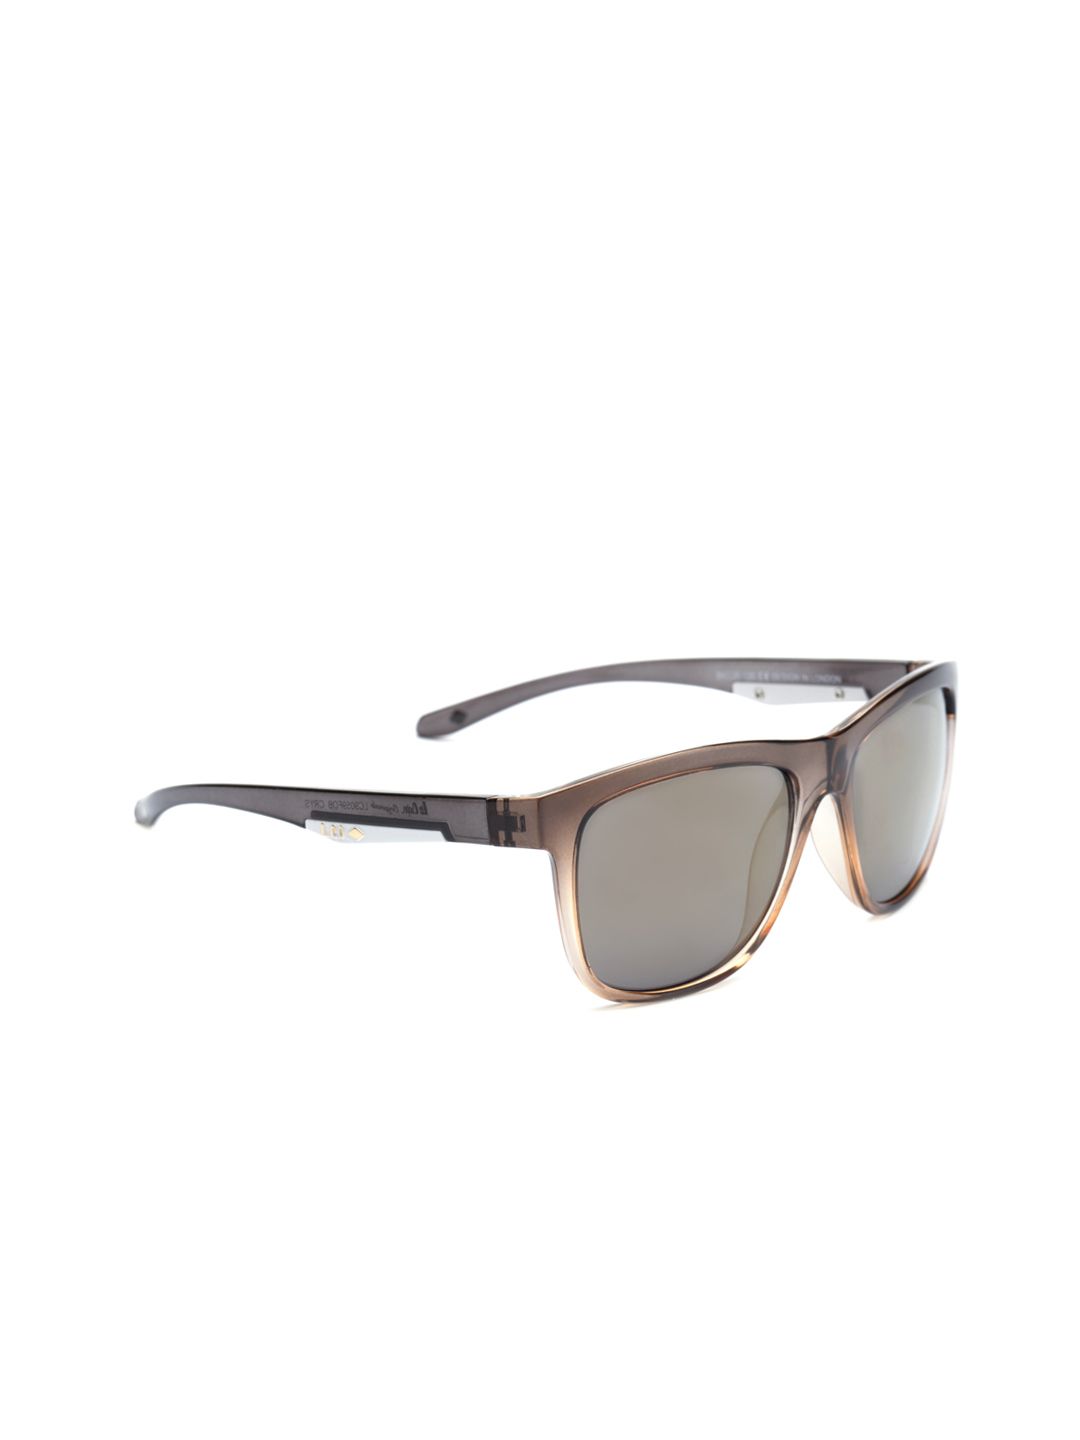 Lee Cooper Unisex Sunglasses LC9059 FOB Price in India